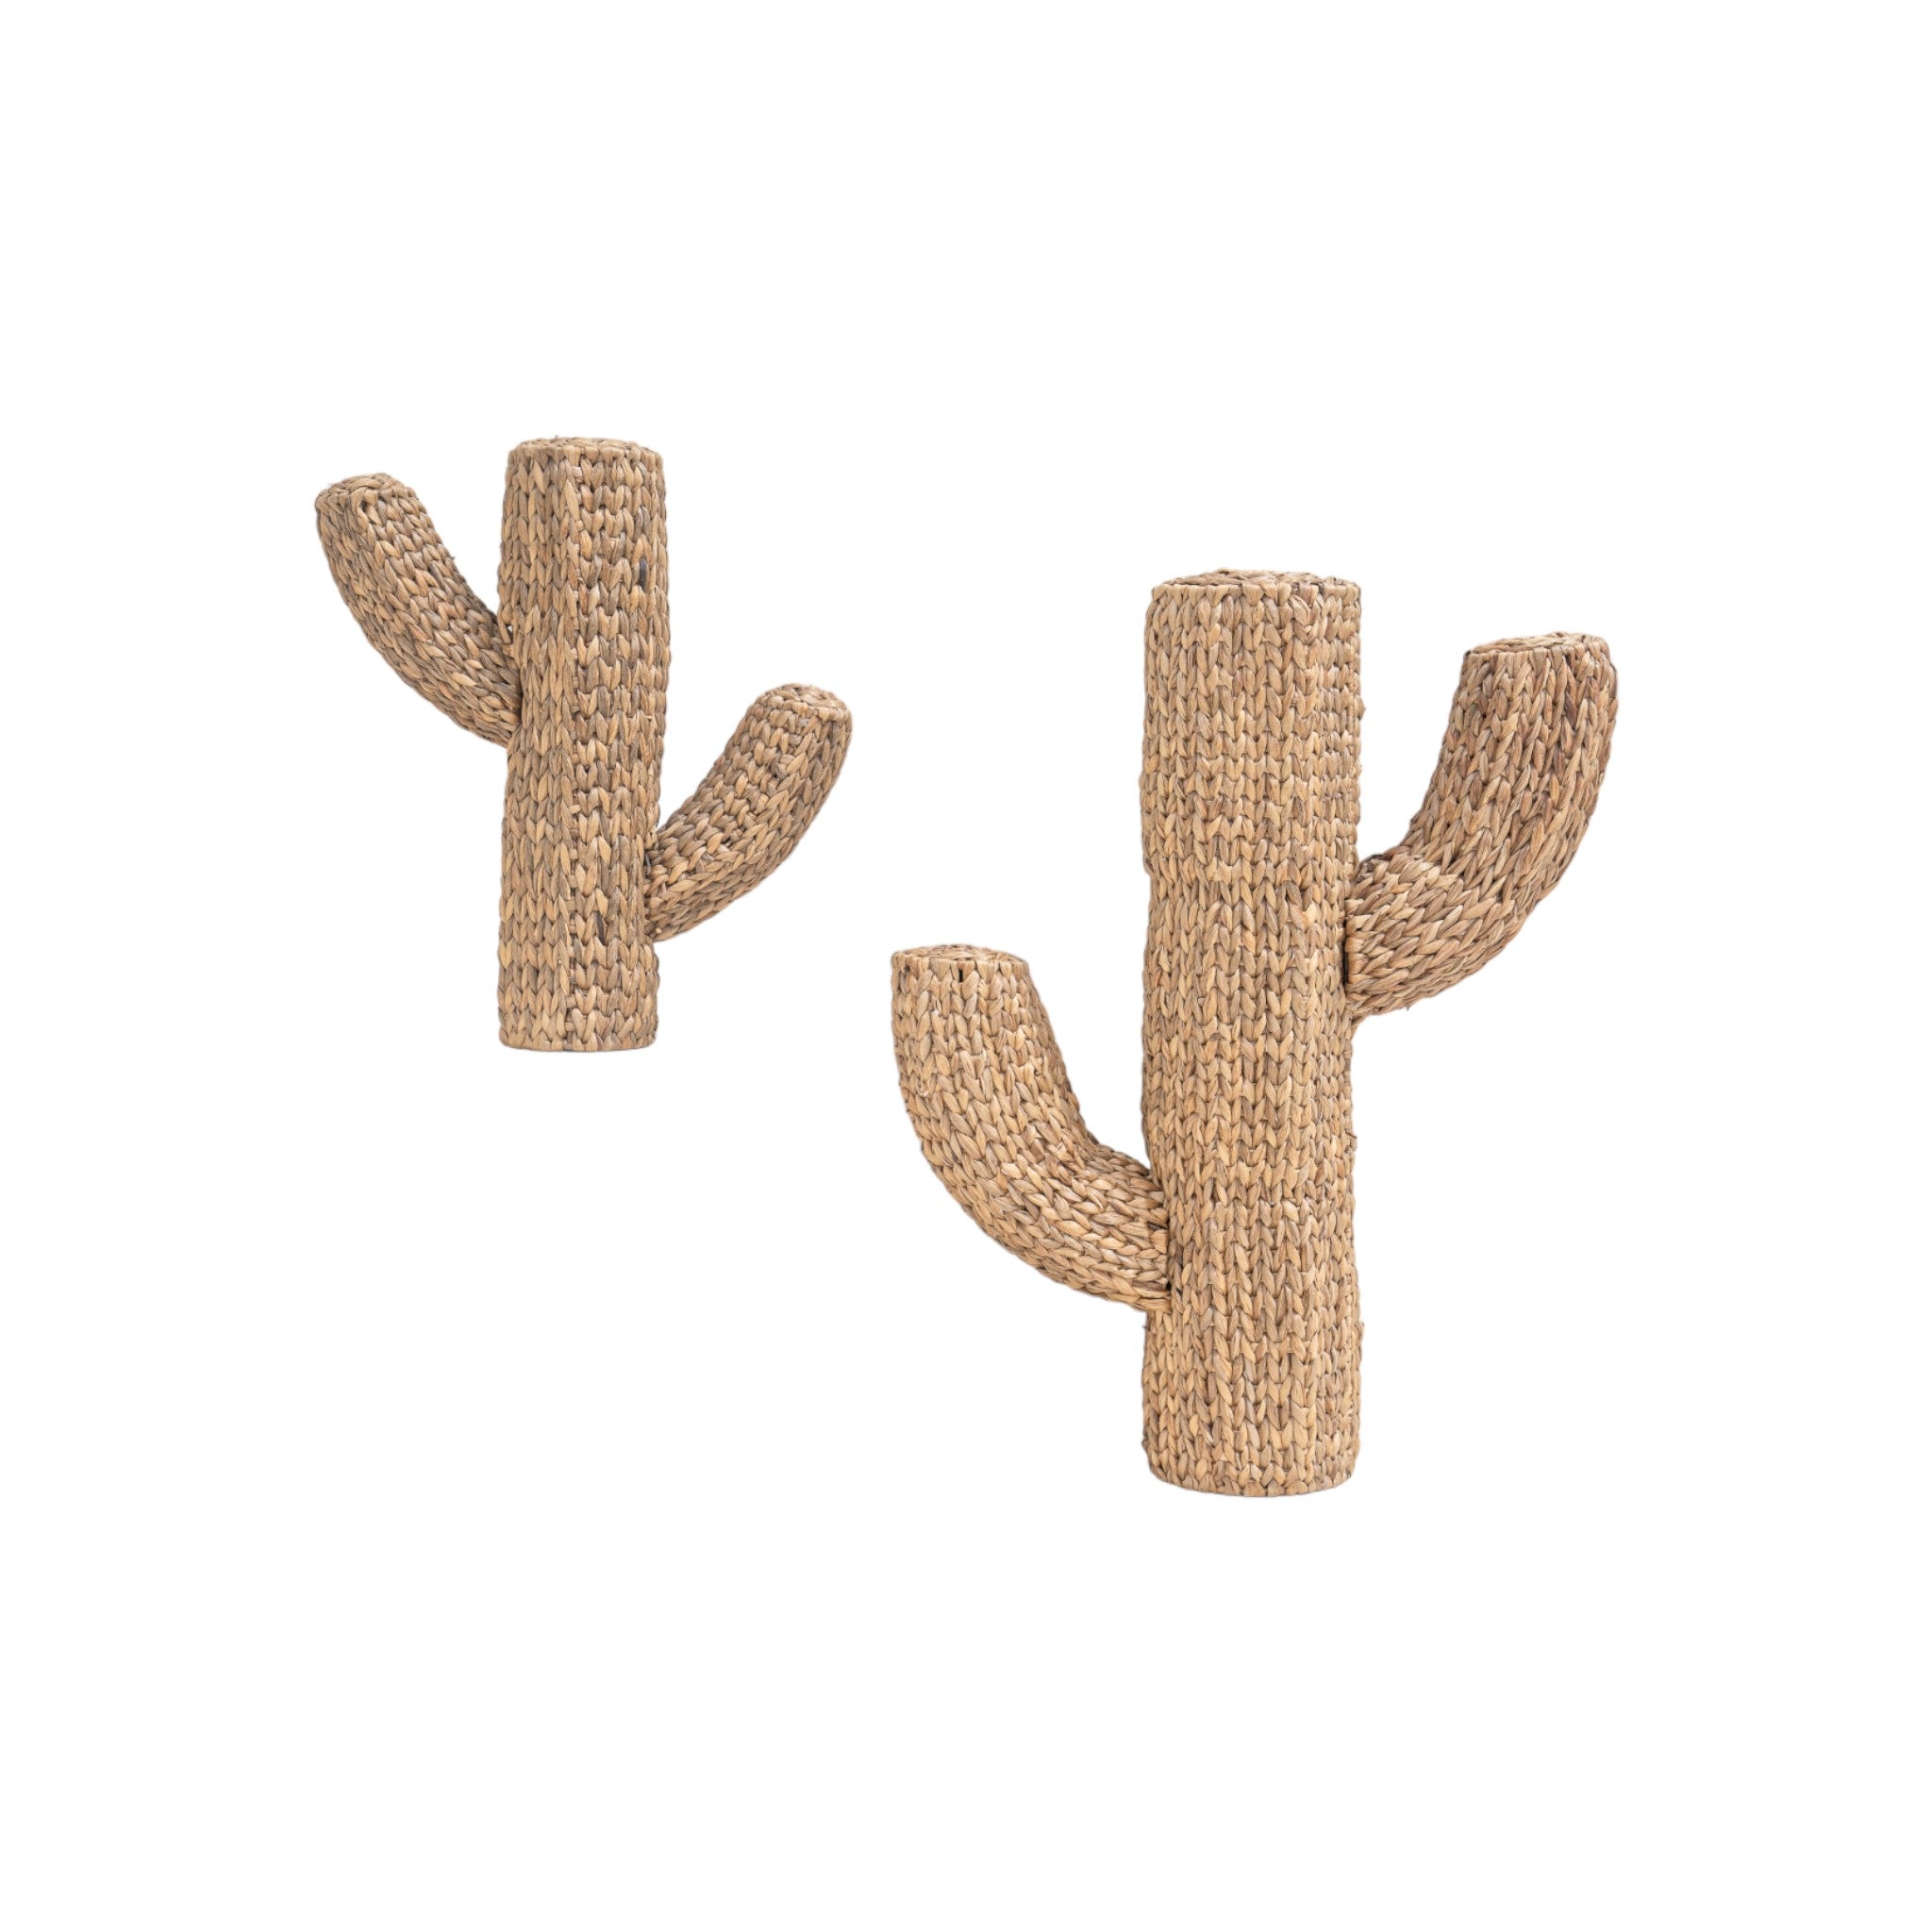 Raffia Decorative Cactus-Set of 2